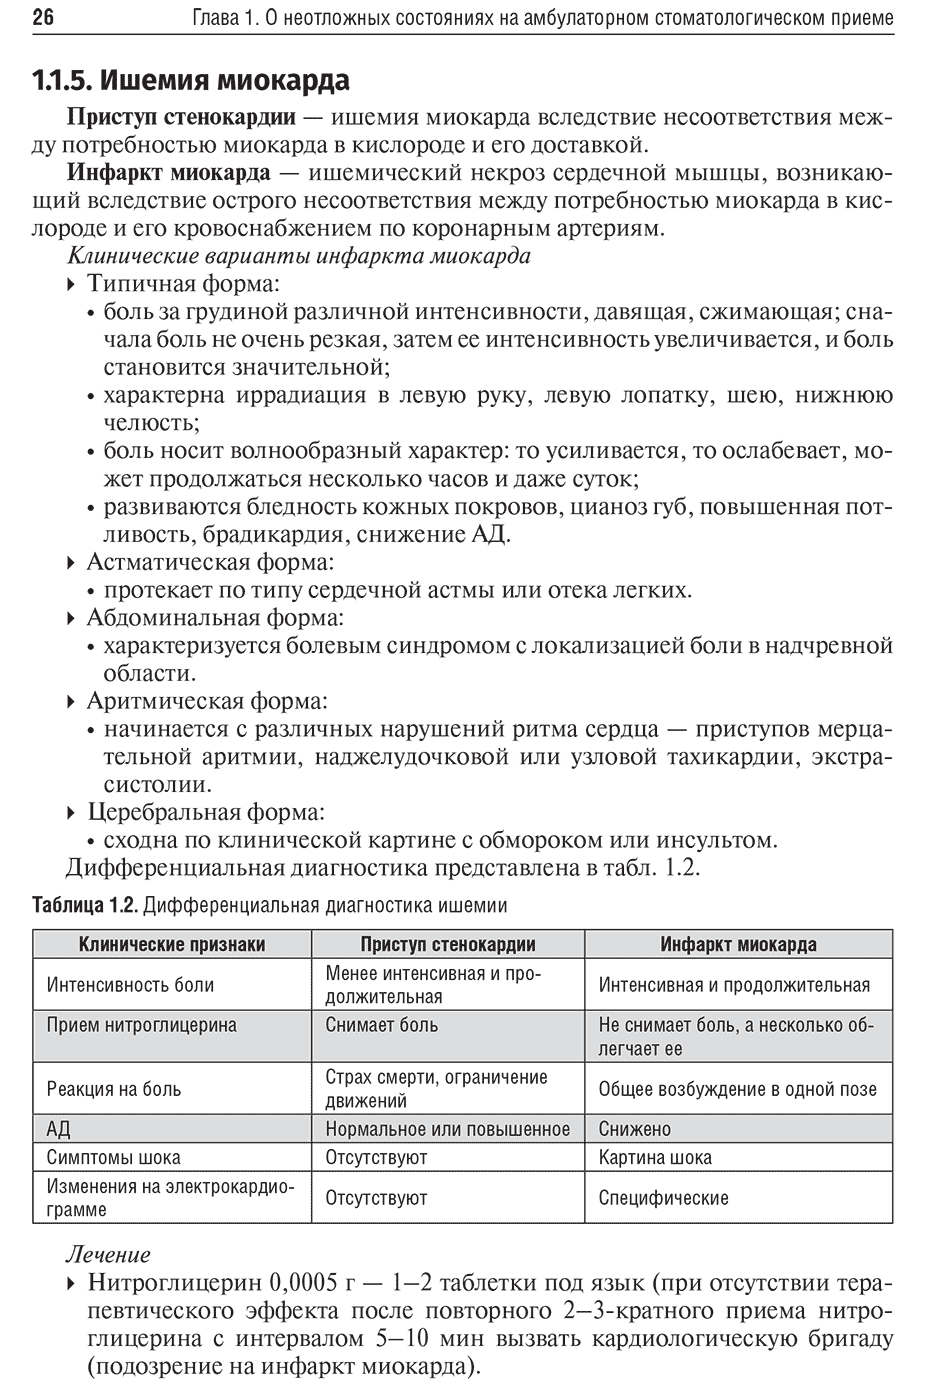 Таблица 1.2. Дифференциальная диагностика ишемии